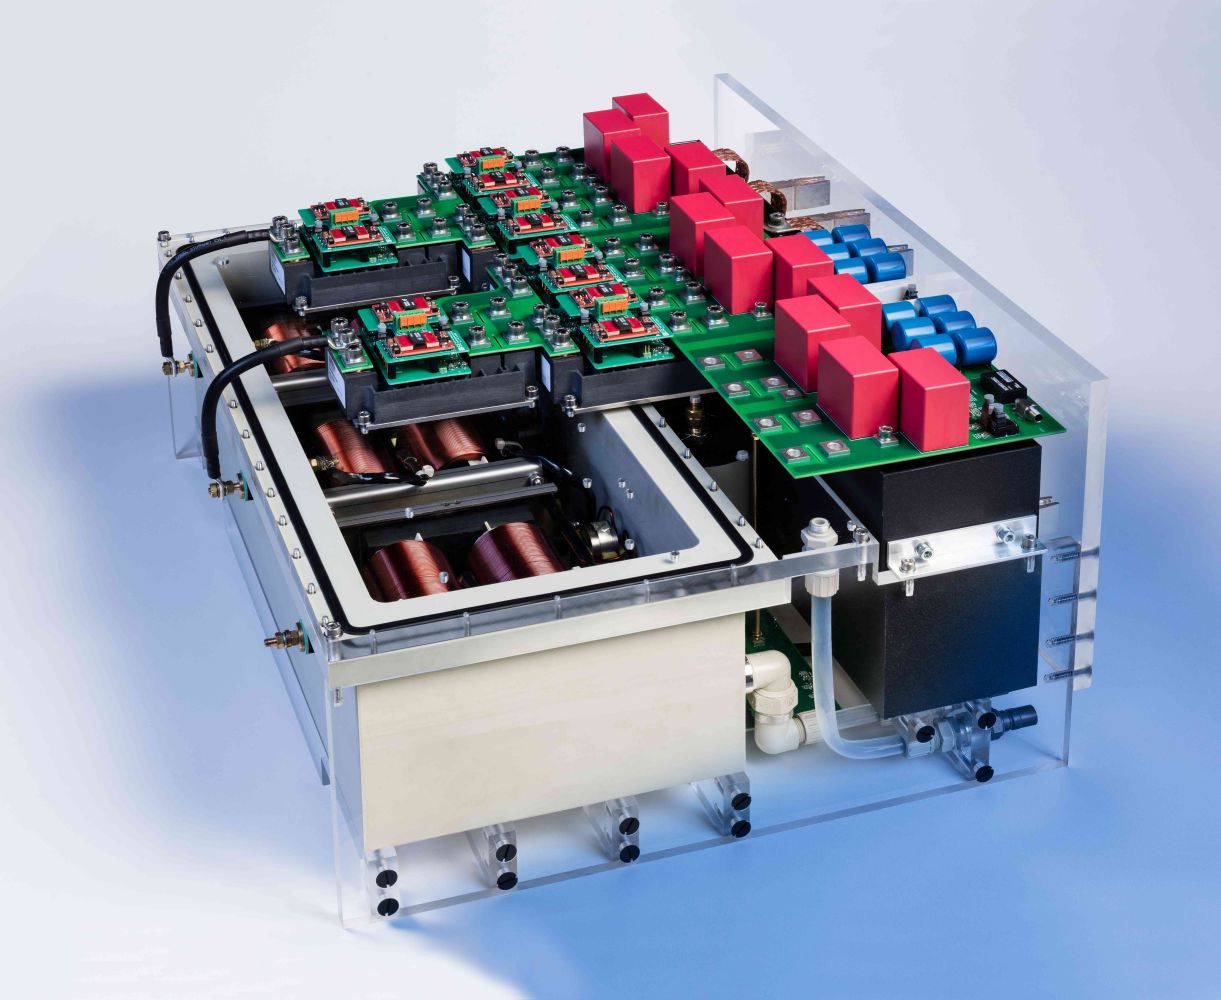 A 250 kVA inverter stack with 3.3 kV SiC transistors developed at Fraunhofer ISE.